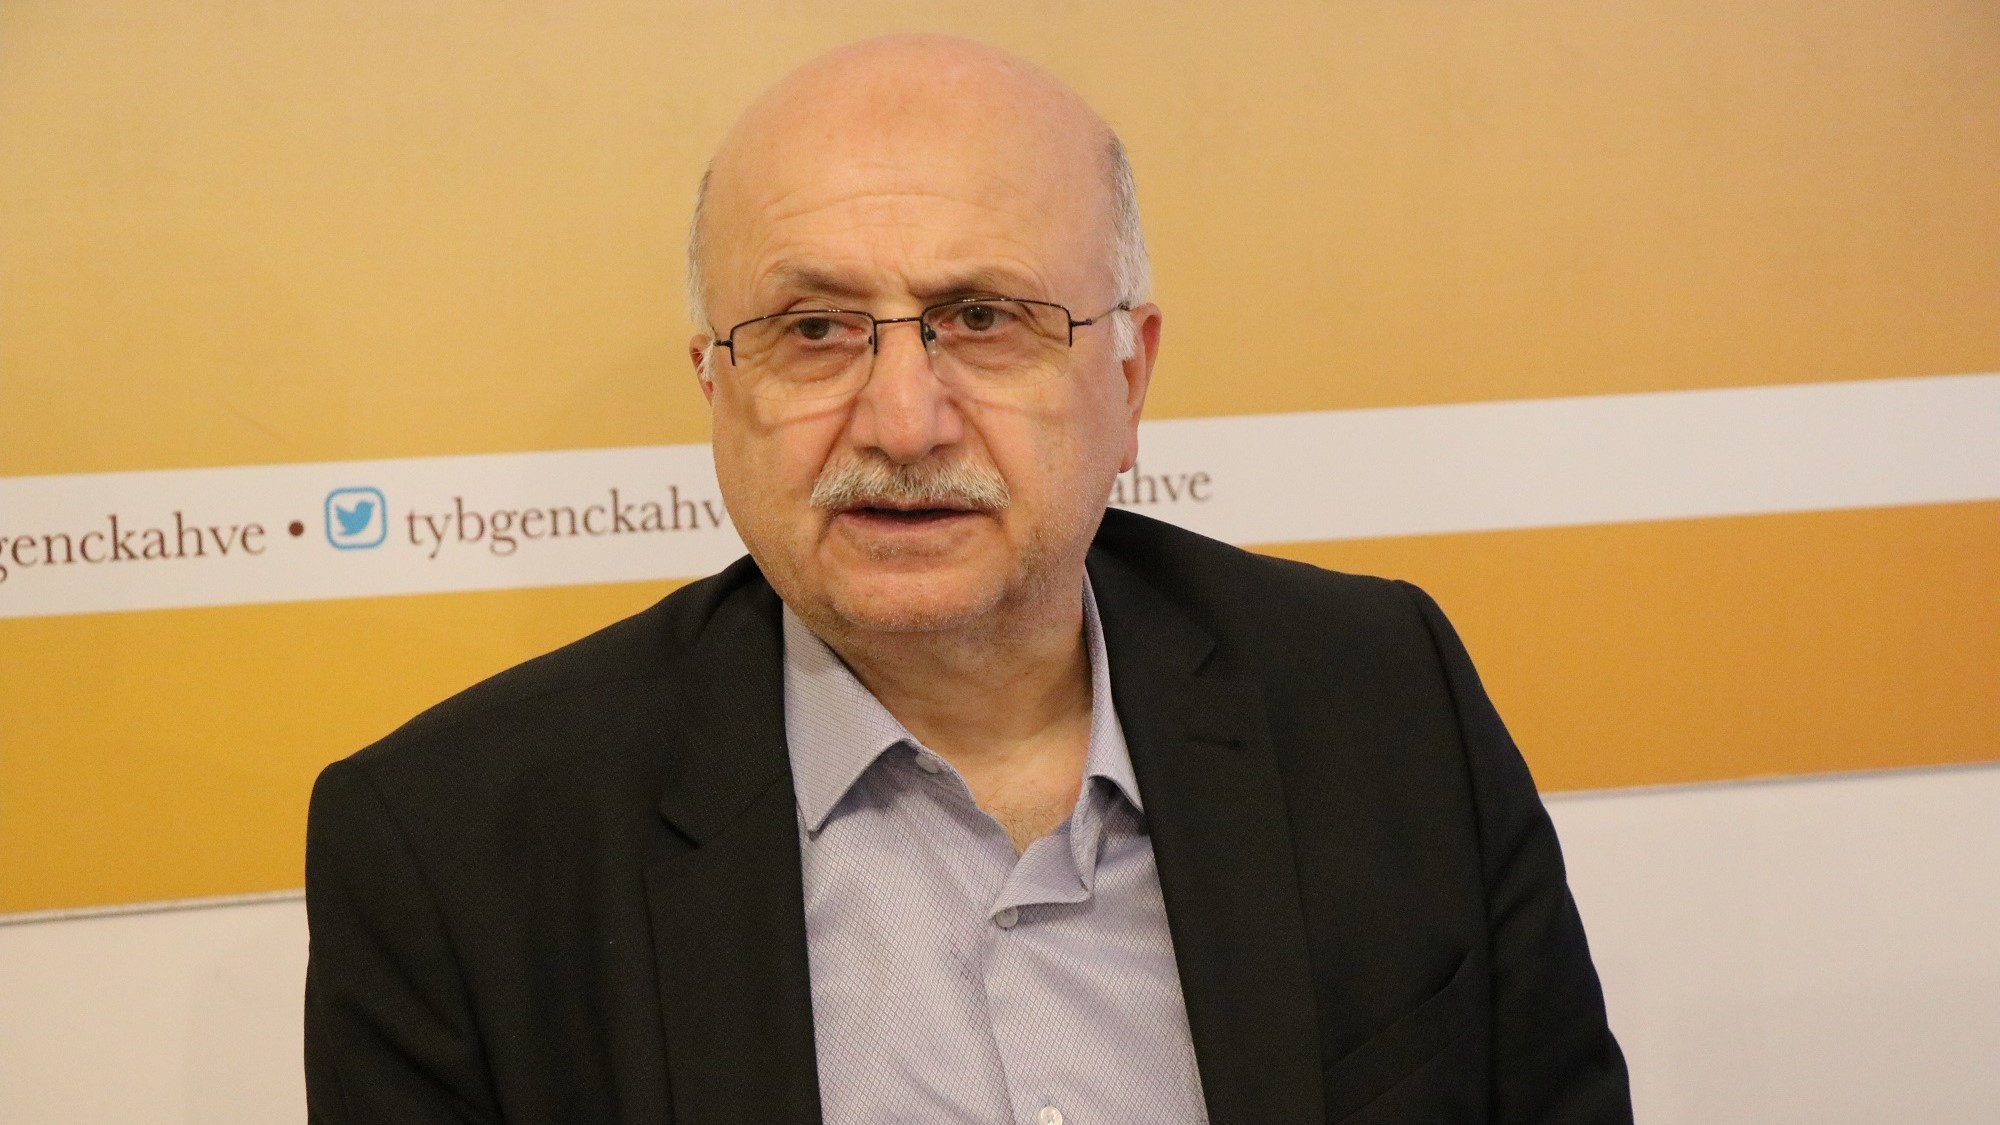 Mesnevî Okumaları -154- Prof. Dr. Adnan Karaismailoğlu